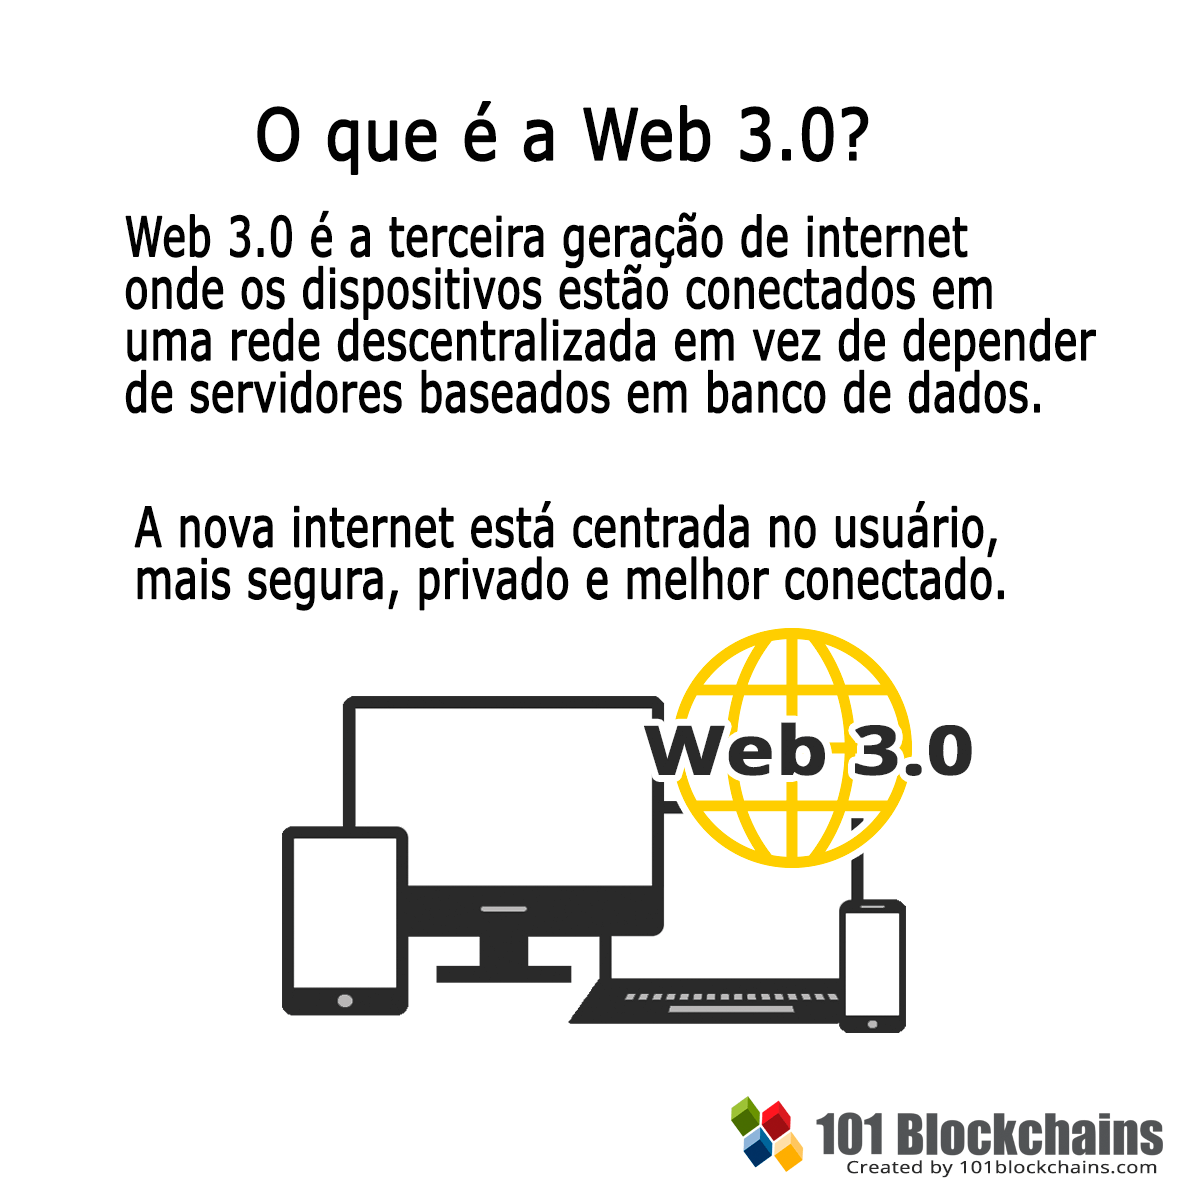 O que é a Web 3